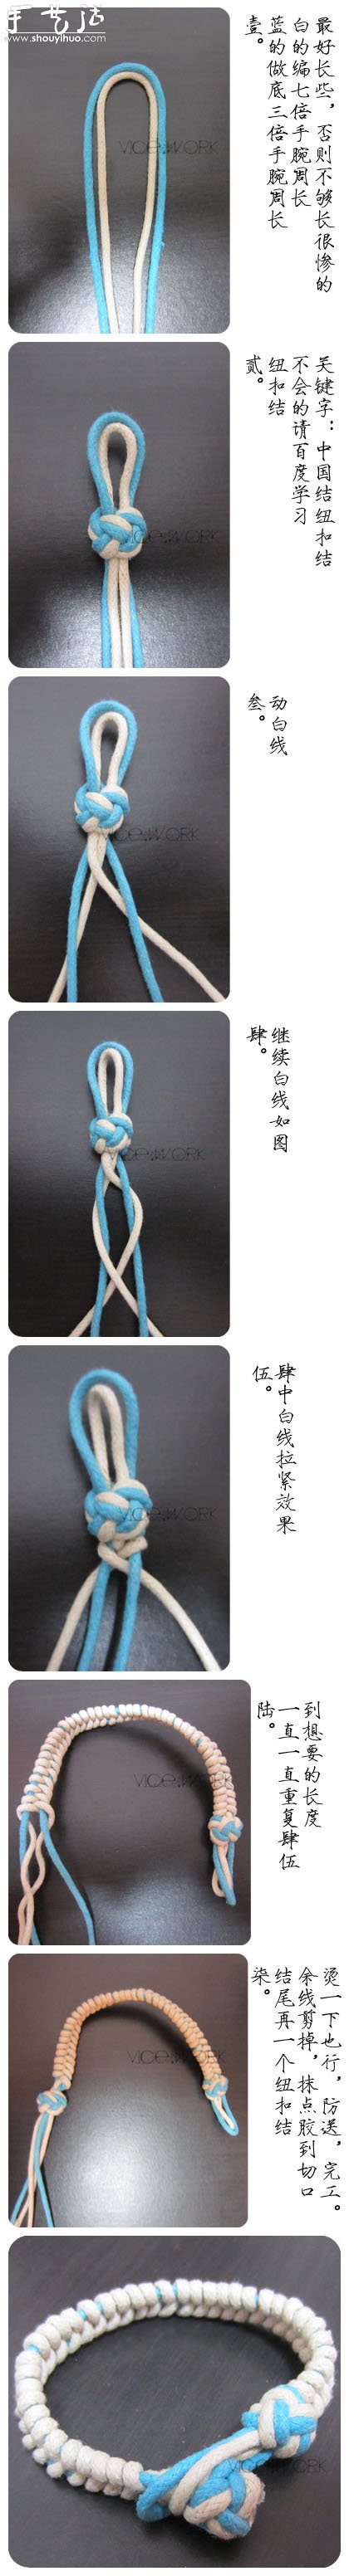 又一款漂亮的手链编织教程